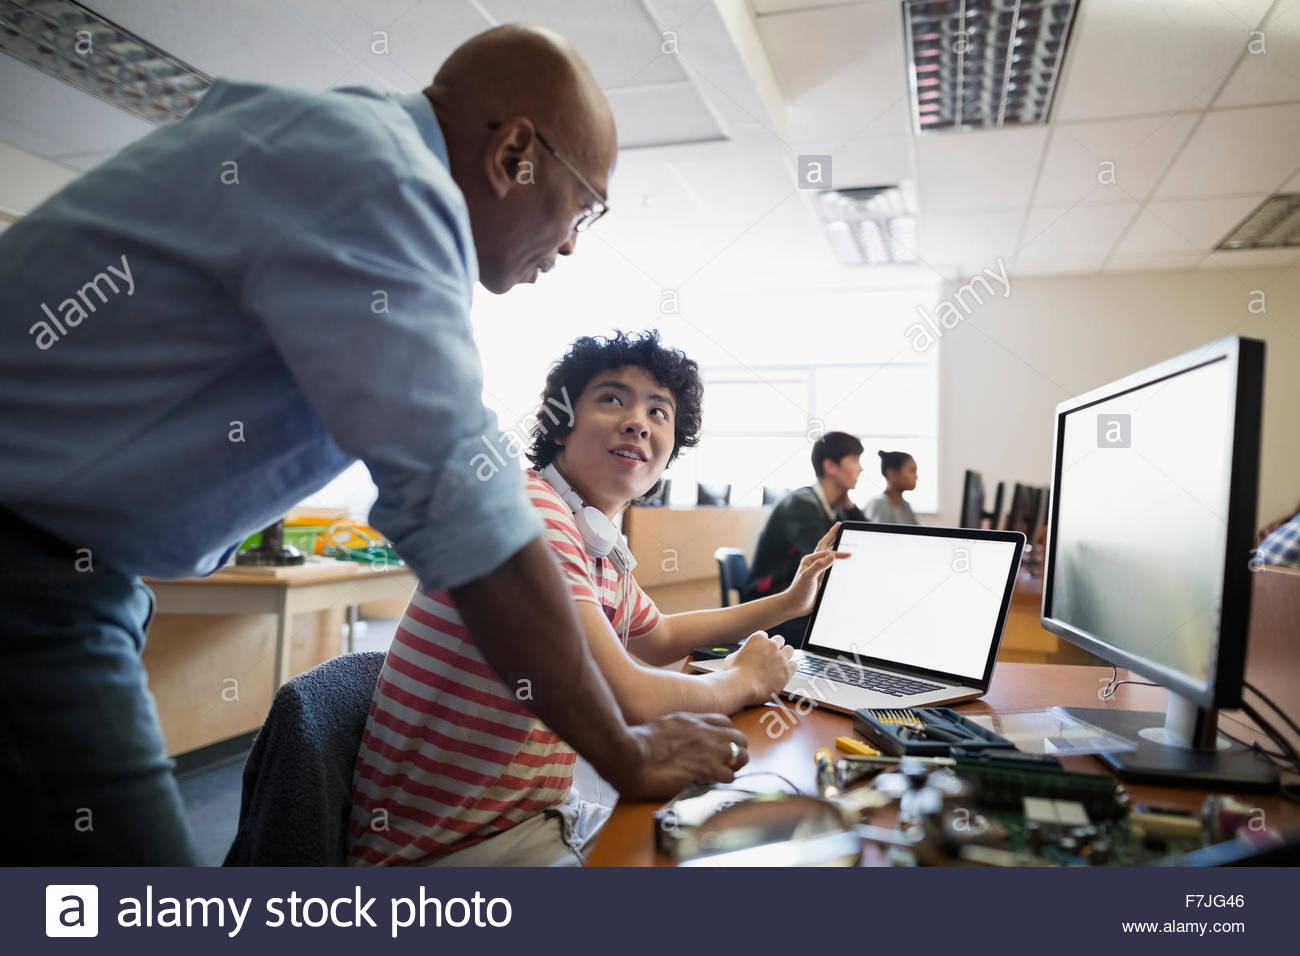 High school teacher student using laptop computer class Stock Photo